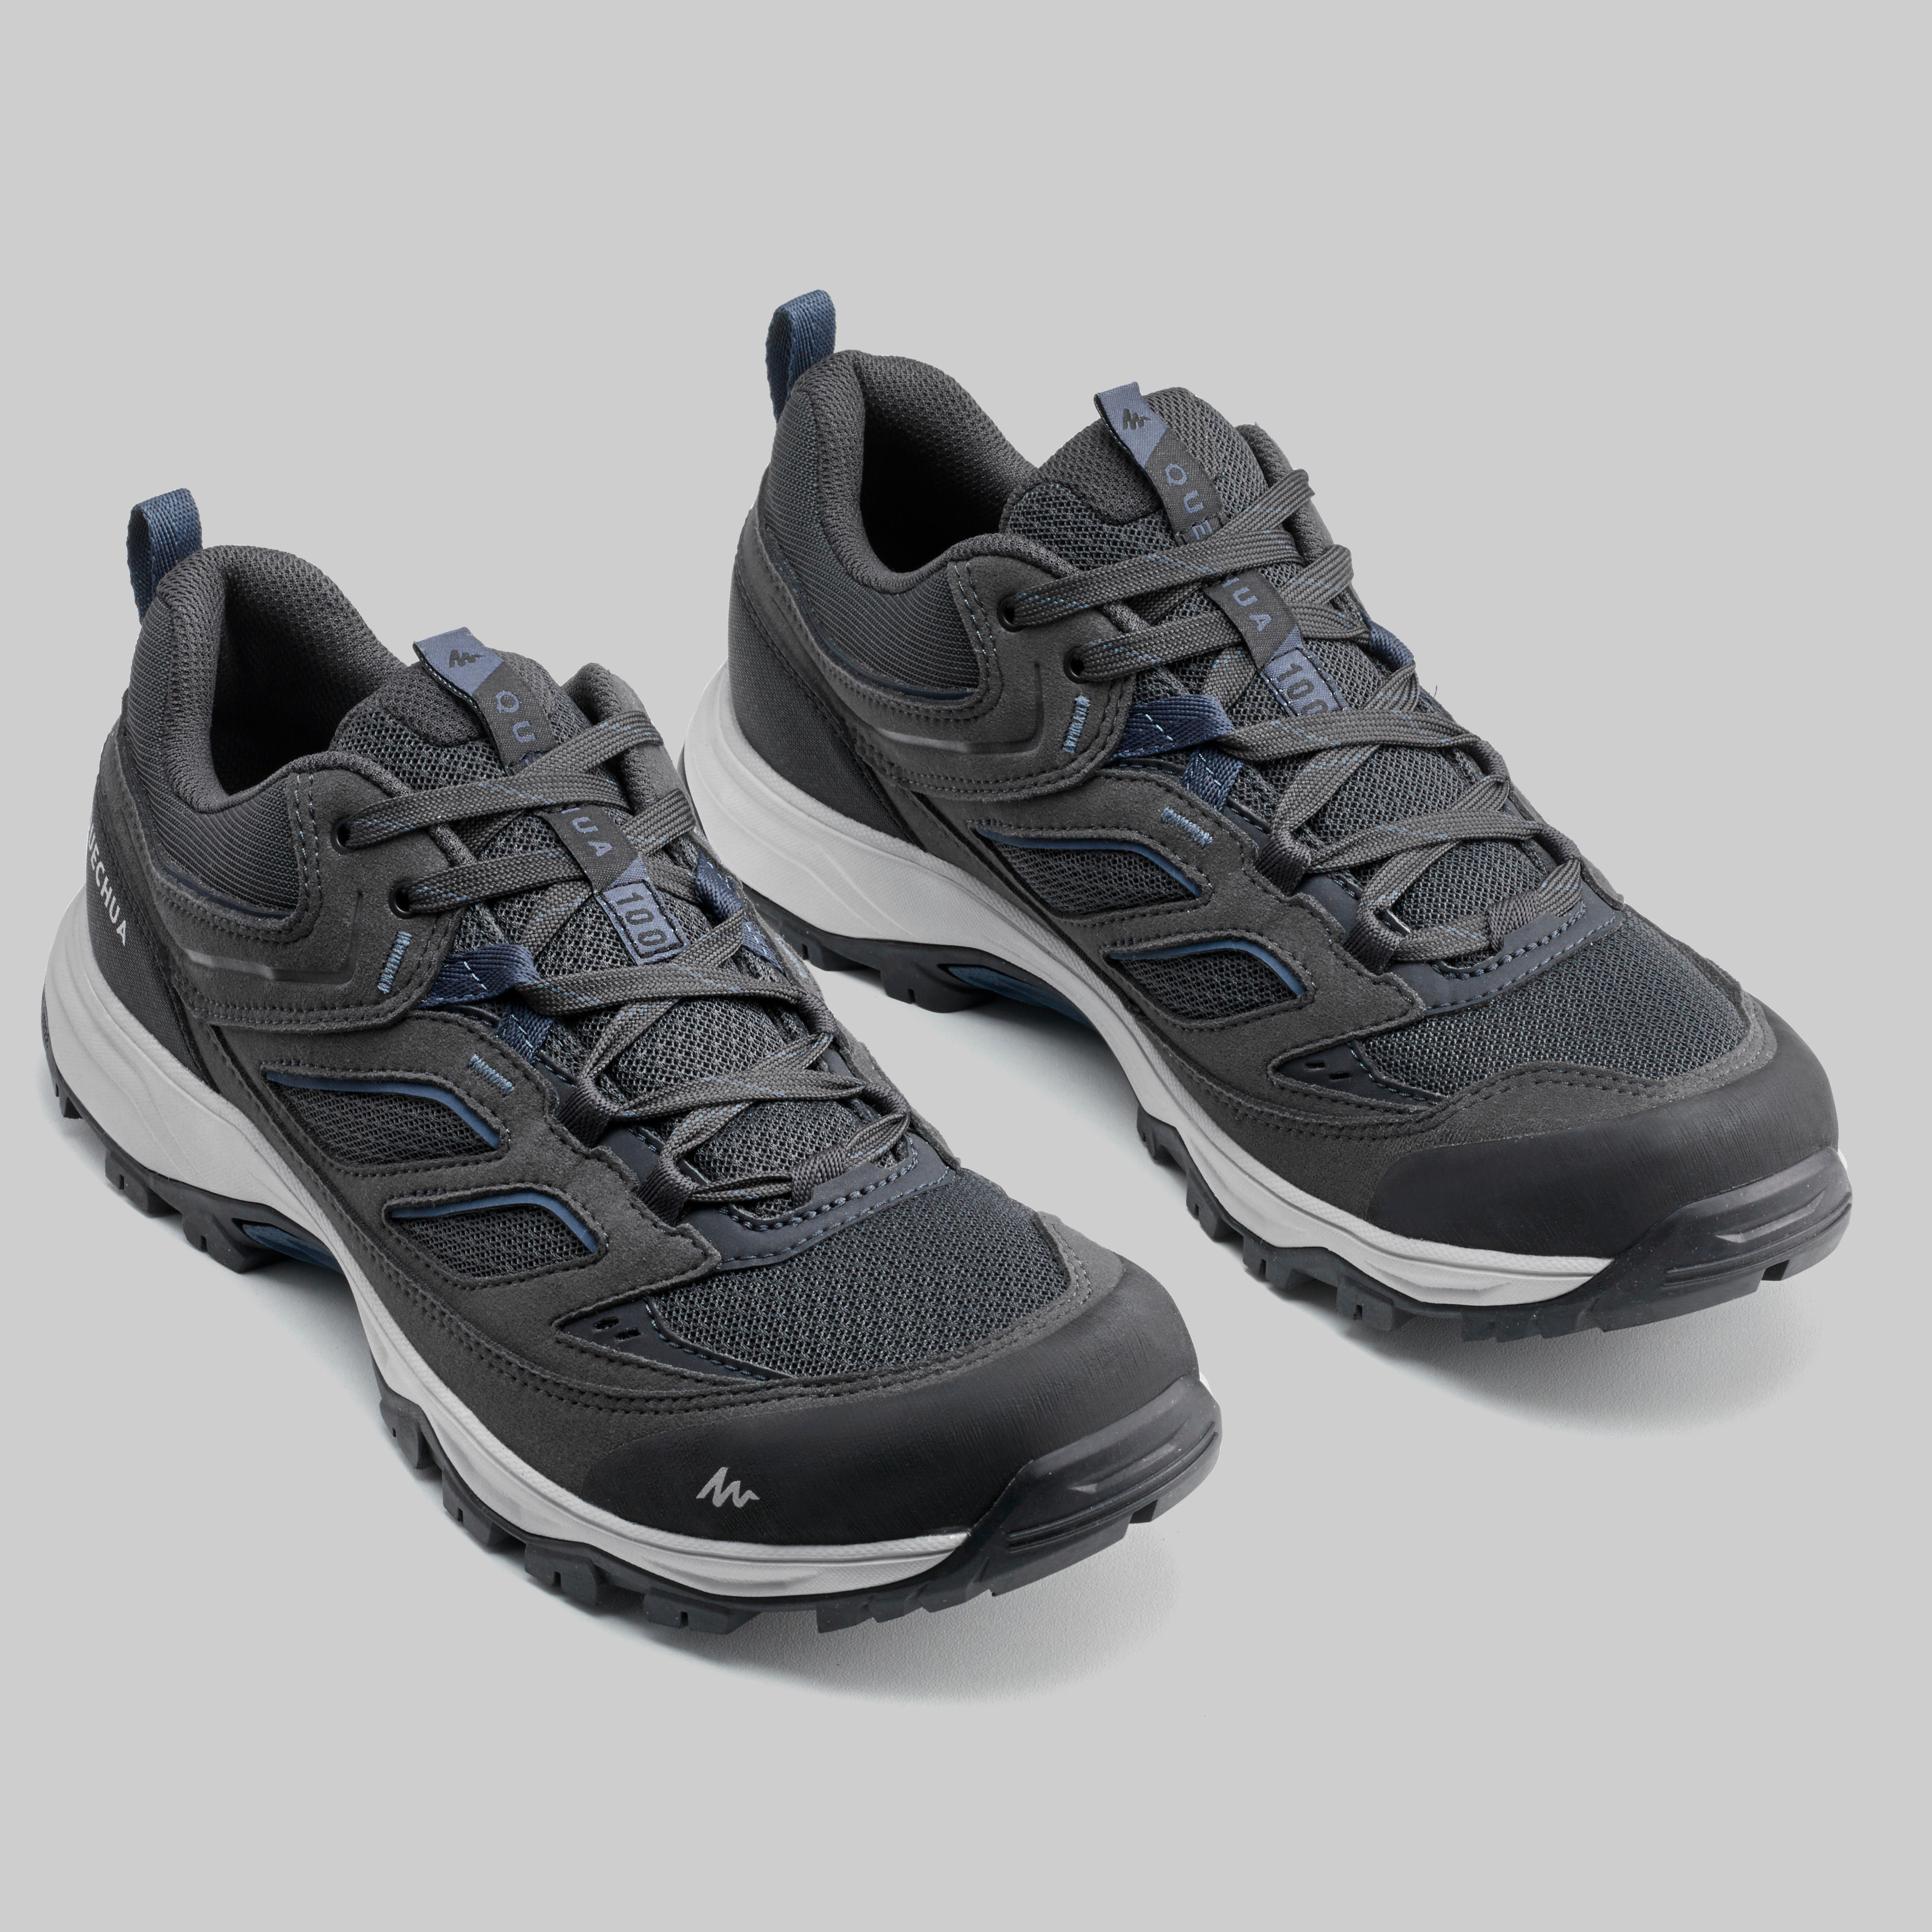 Chaussures de randonnée homme – MH 100 gris - QUECHUA